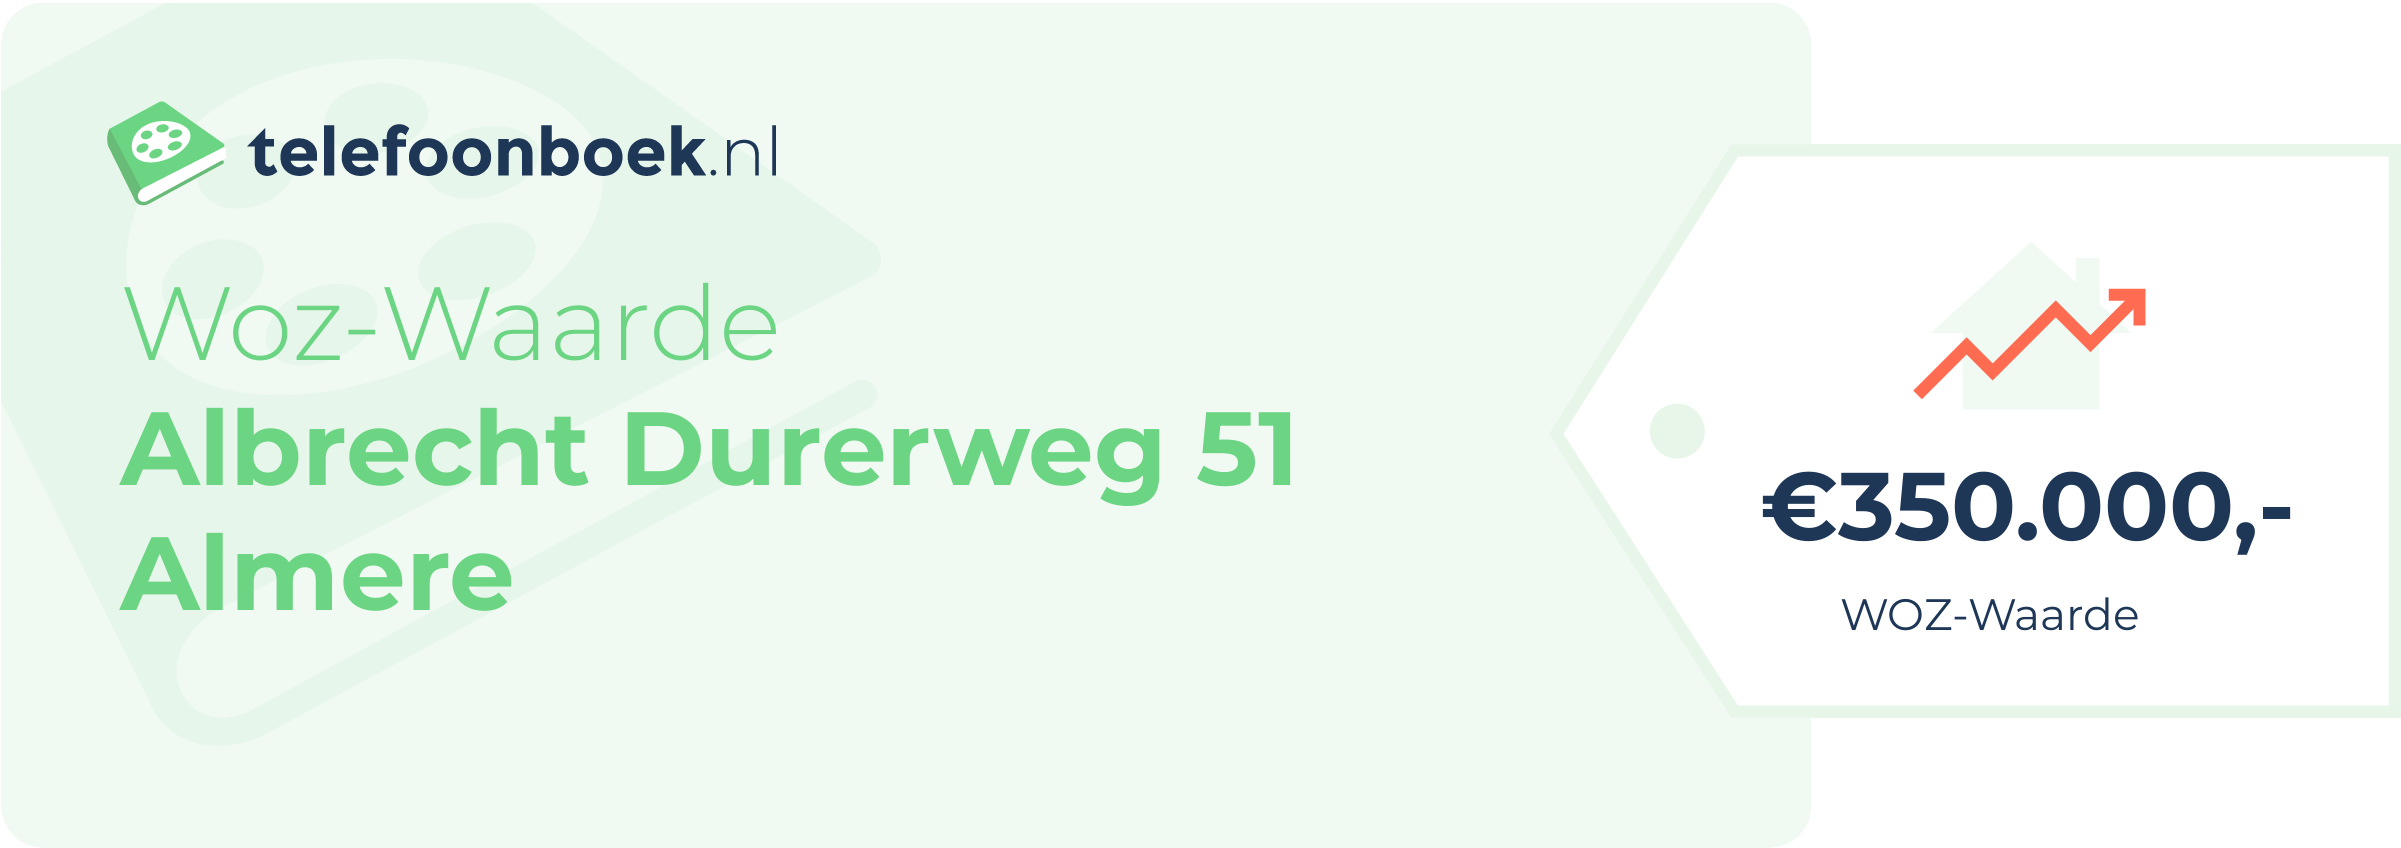 WOZ-waarde Albrecht Durerweg 51 Almere